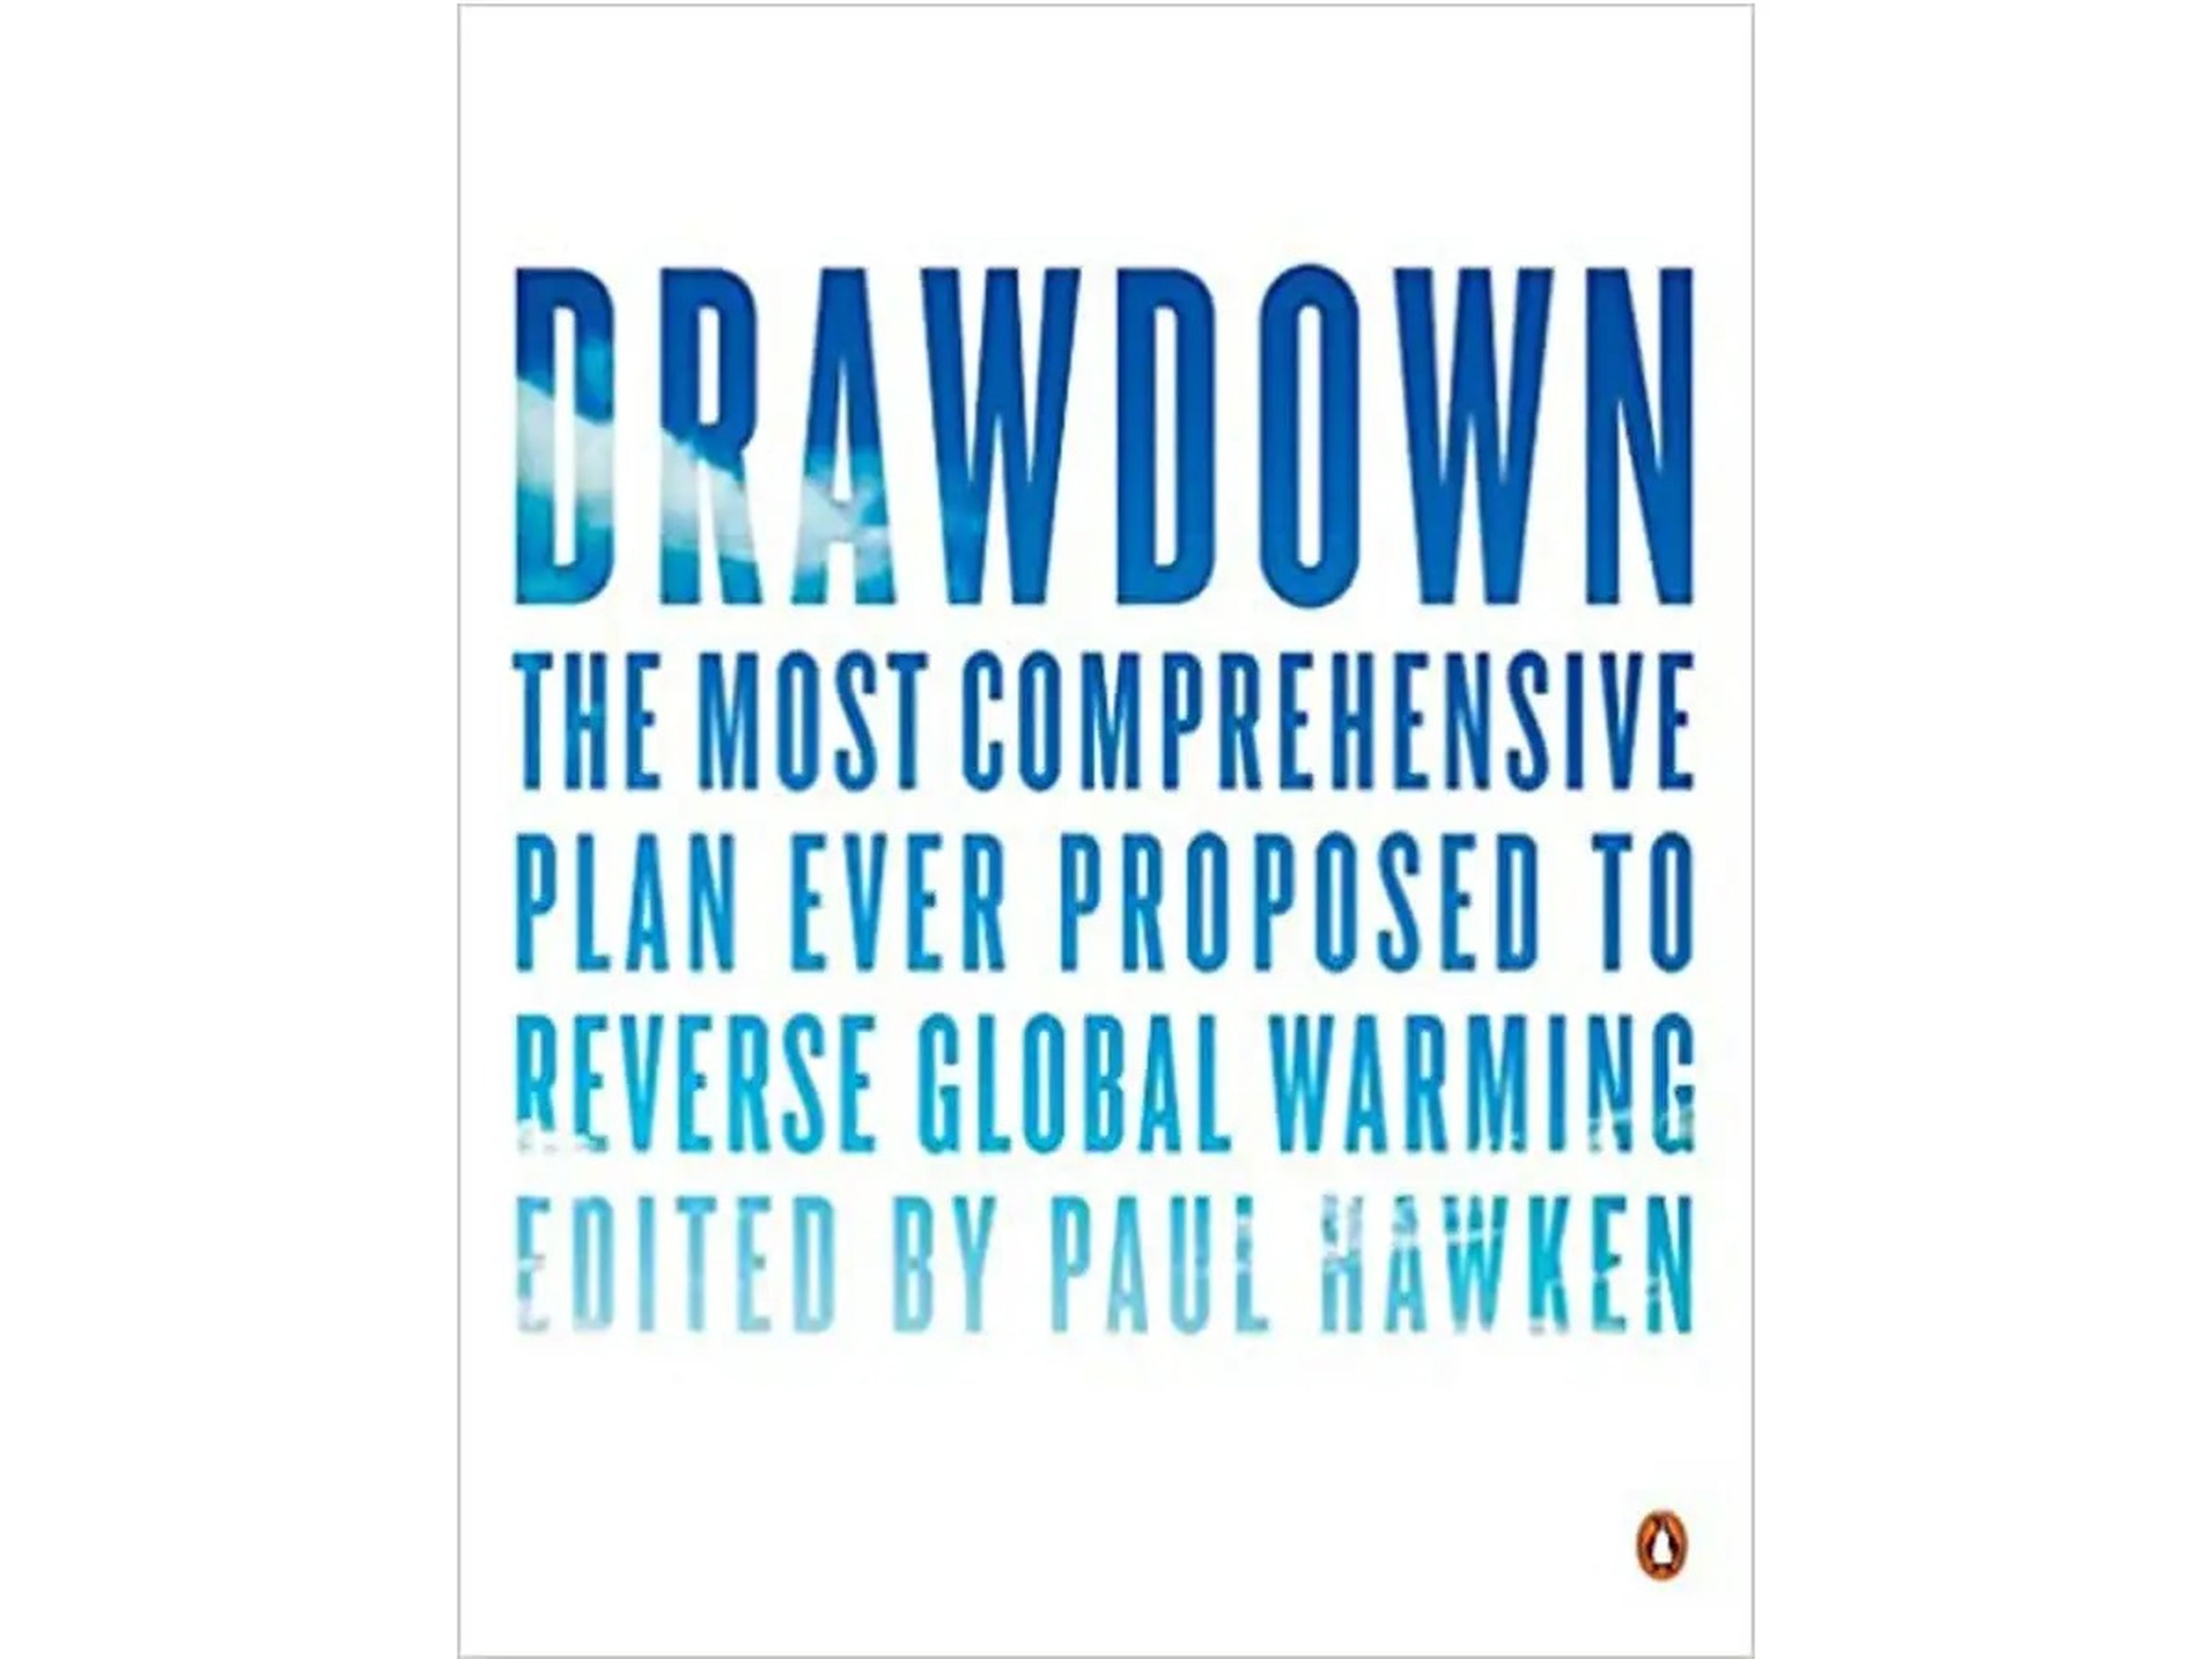 'Drawdown: El plan más completo jamás propuesto para invertir el calentamiento global' editado por Paul Hawken.